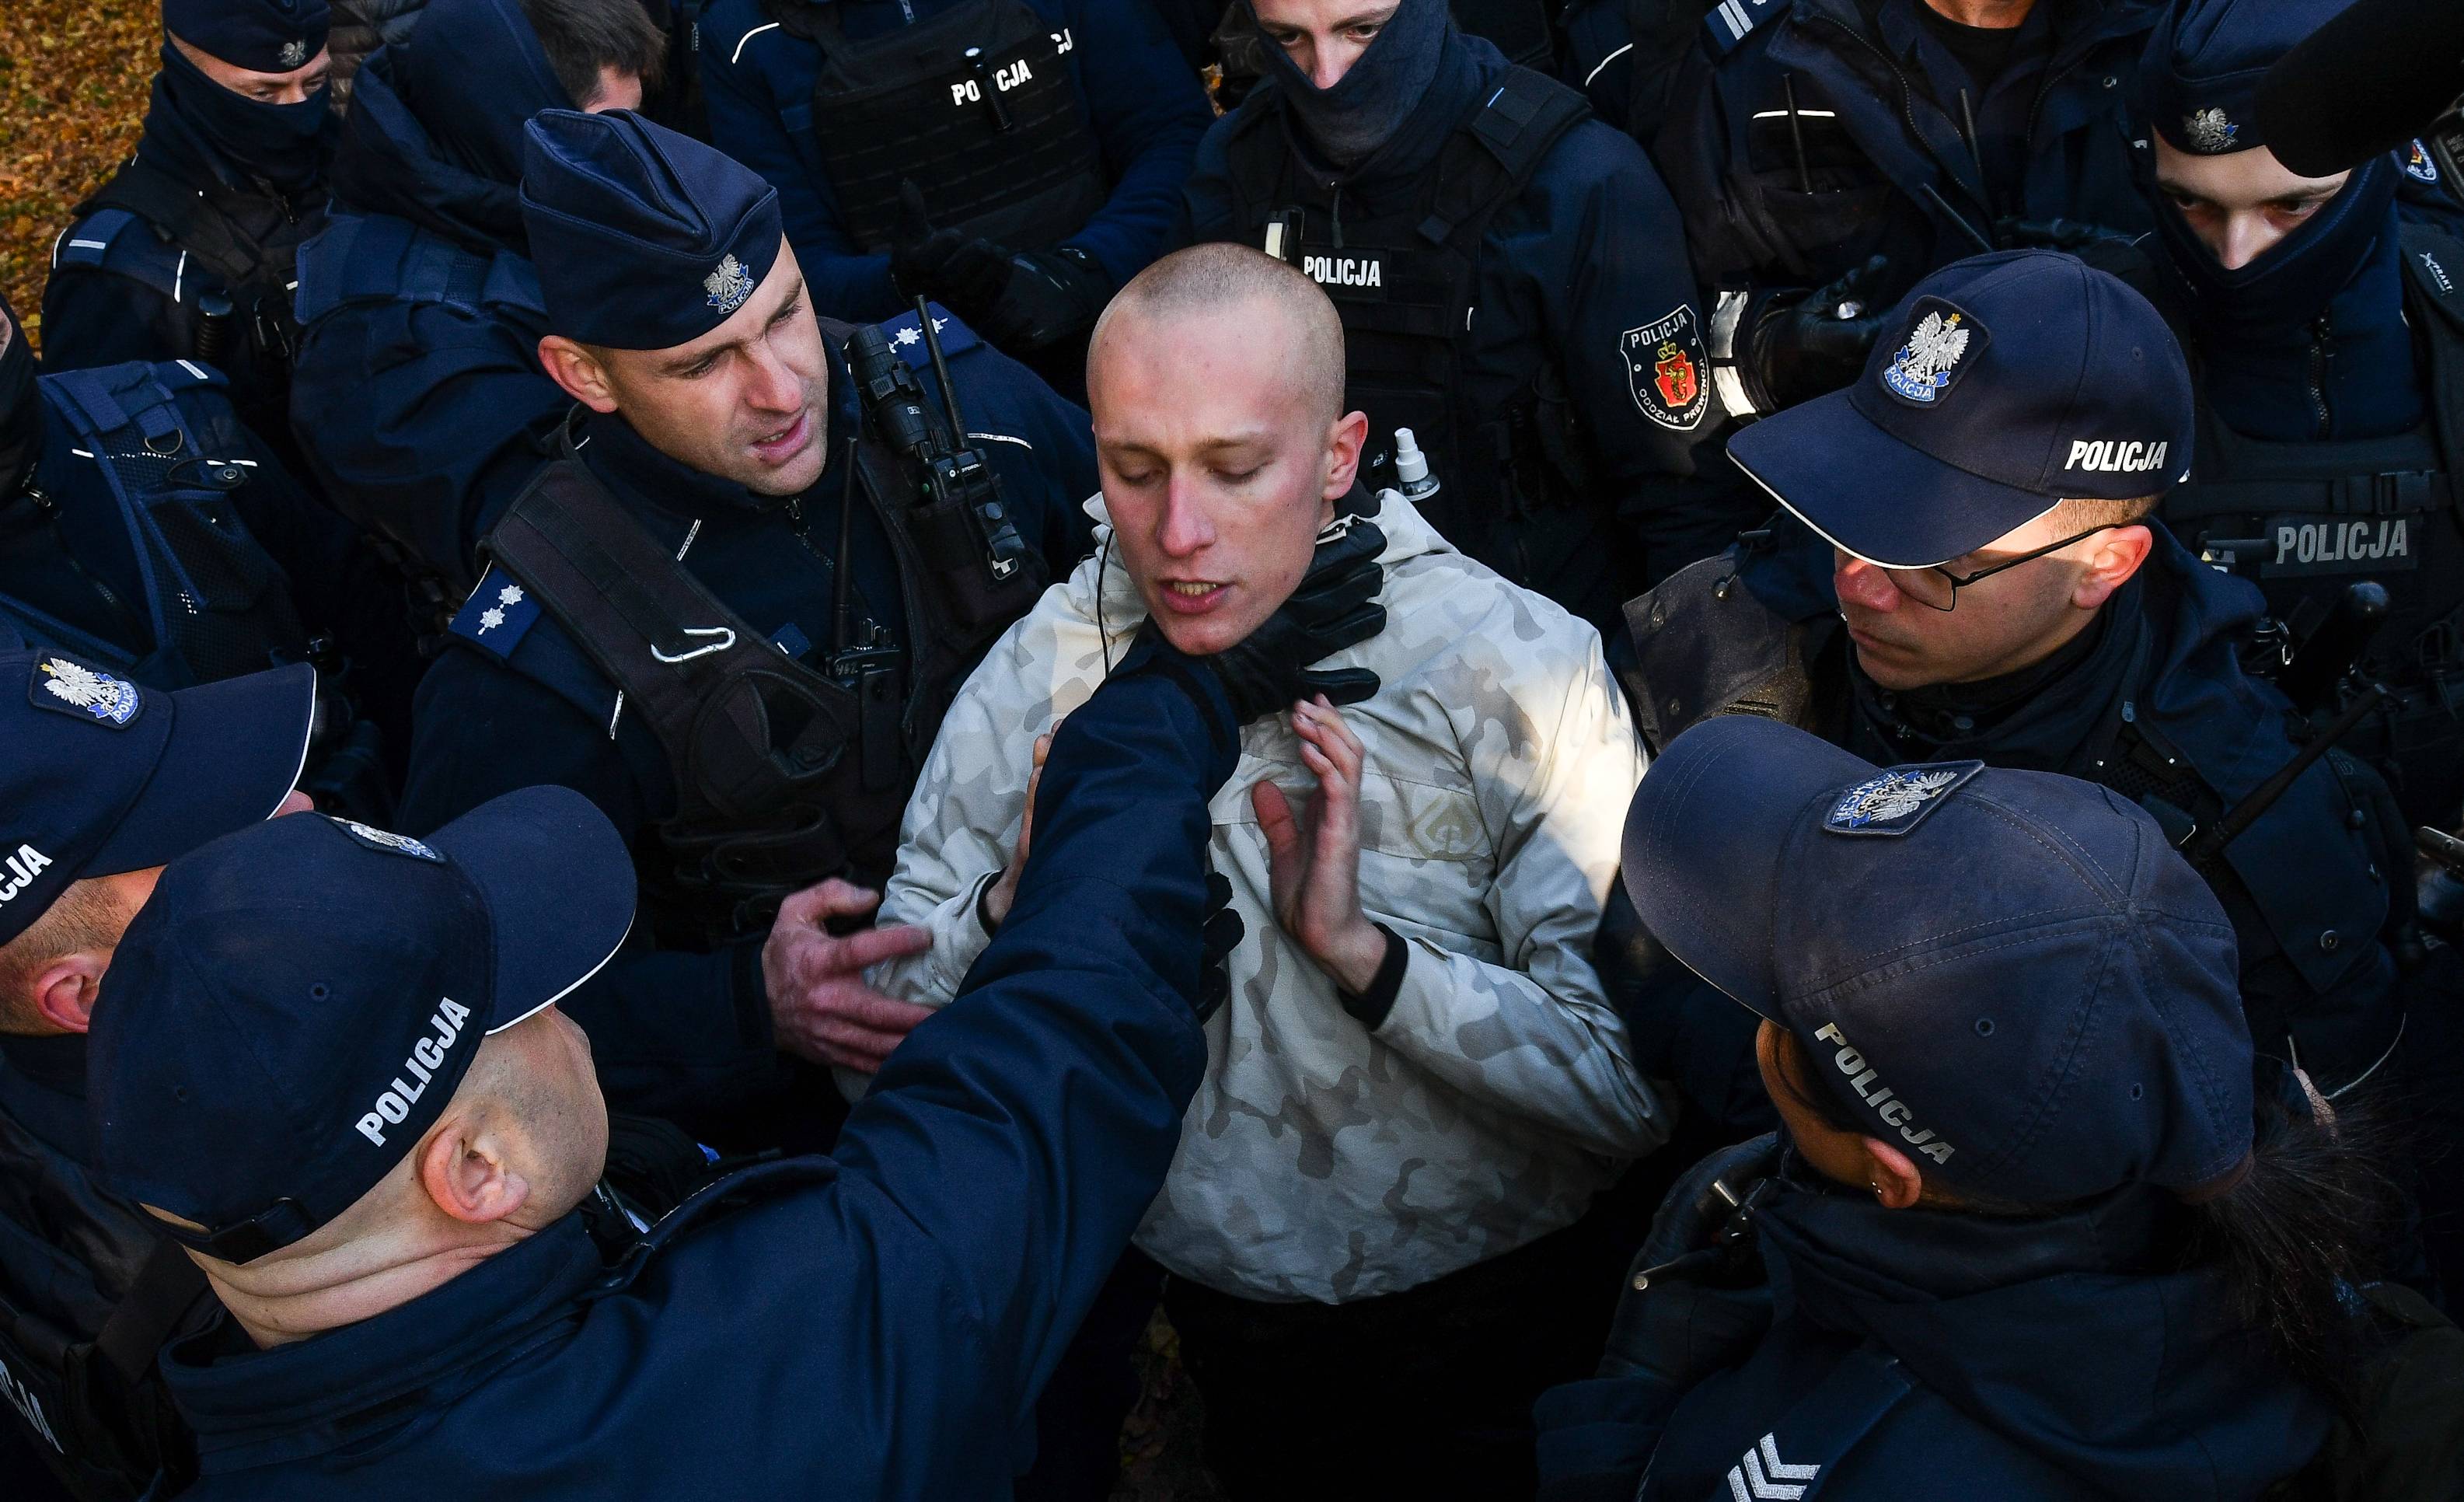 Policjant chwyta za gardło protestującego, otoczonego przez innych policjantów. Policyjna przemoc